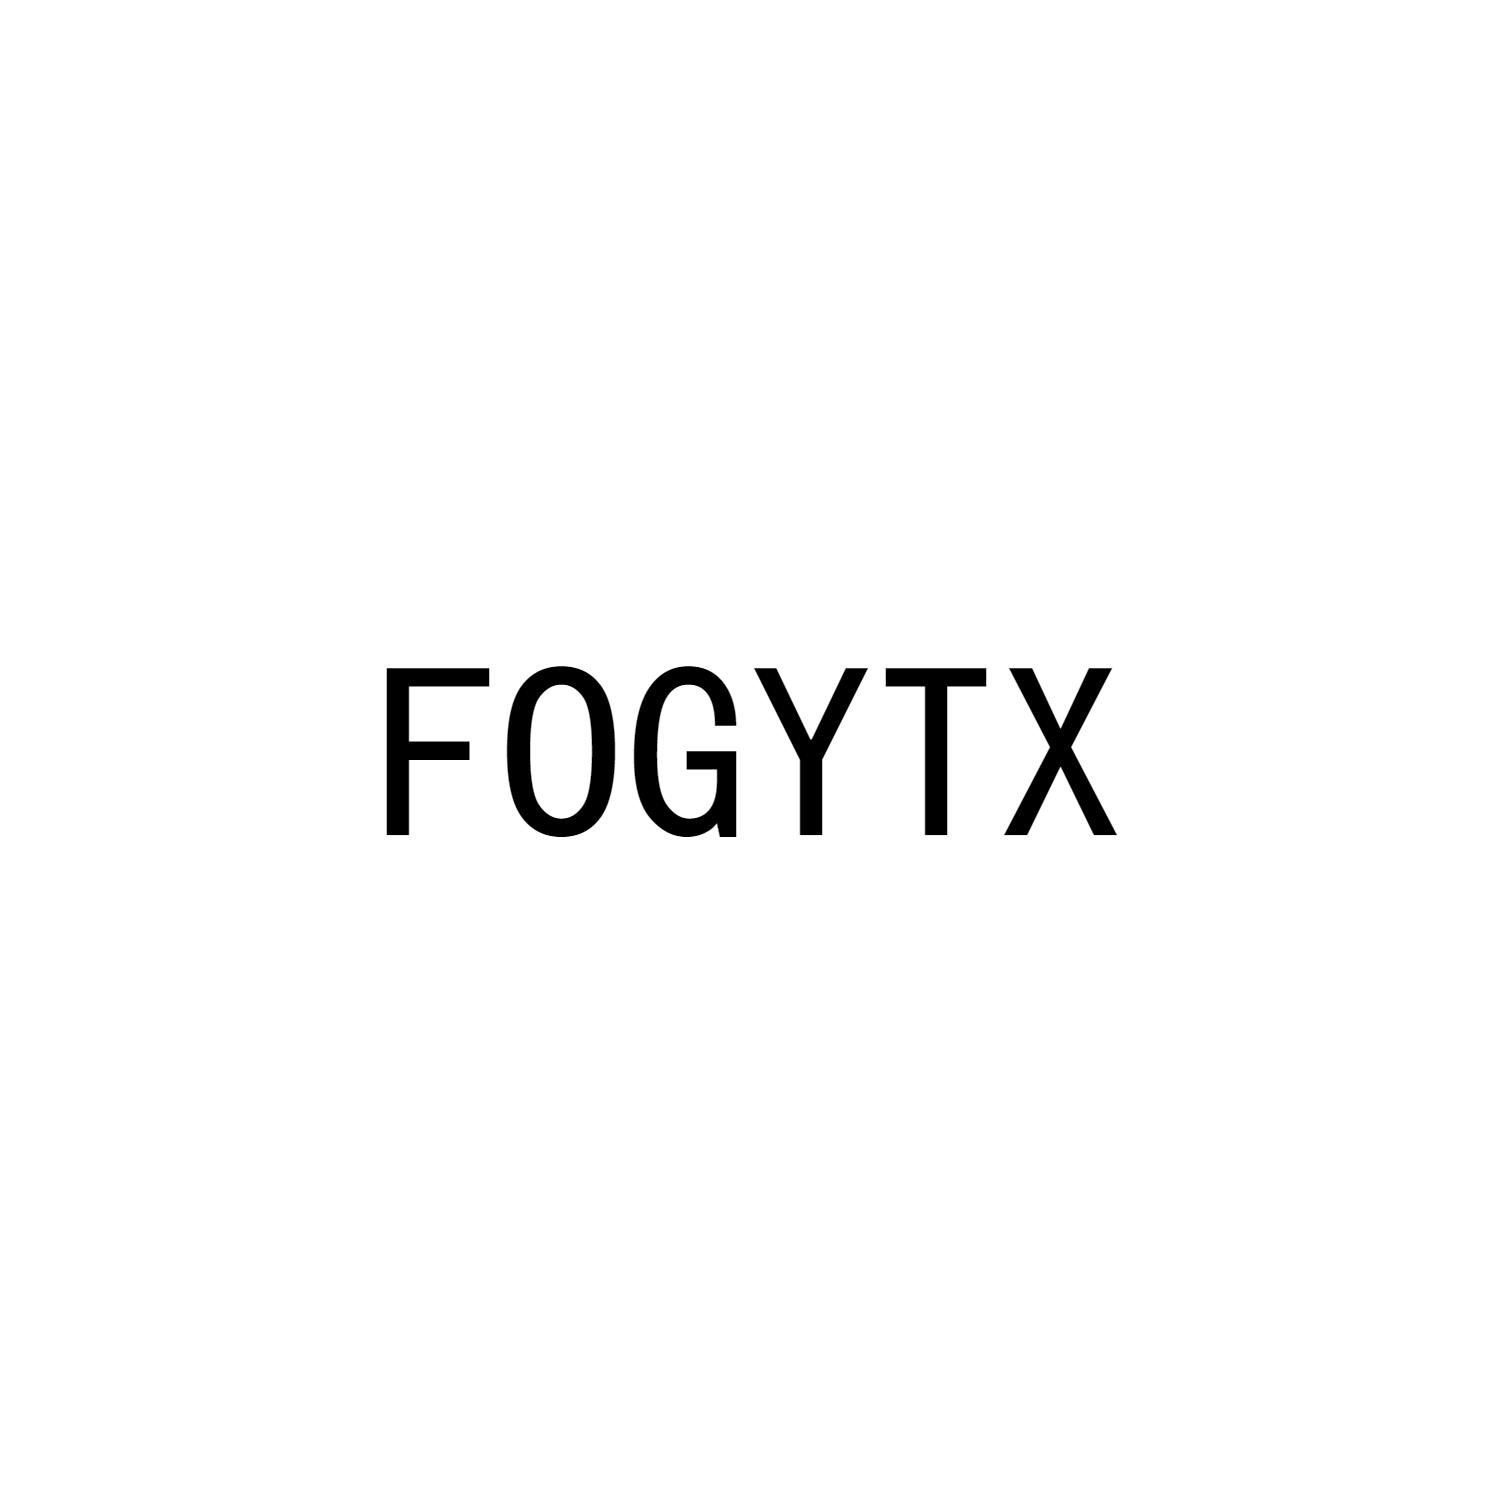 FOGYTX